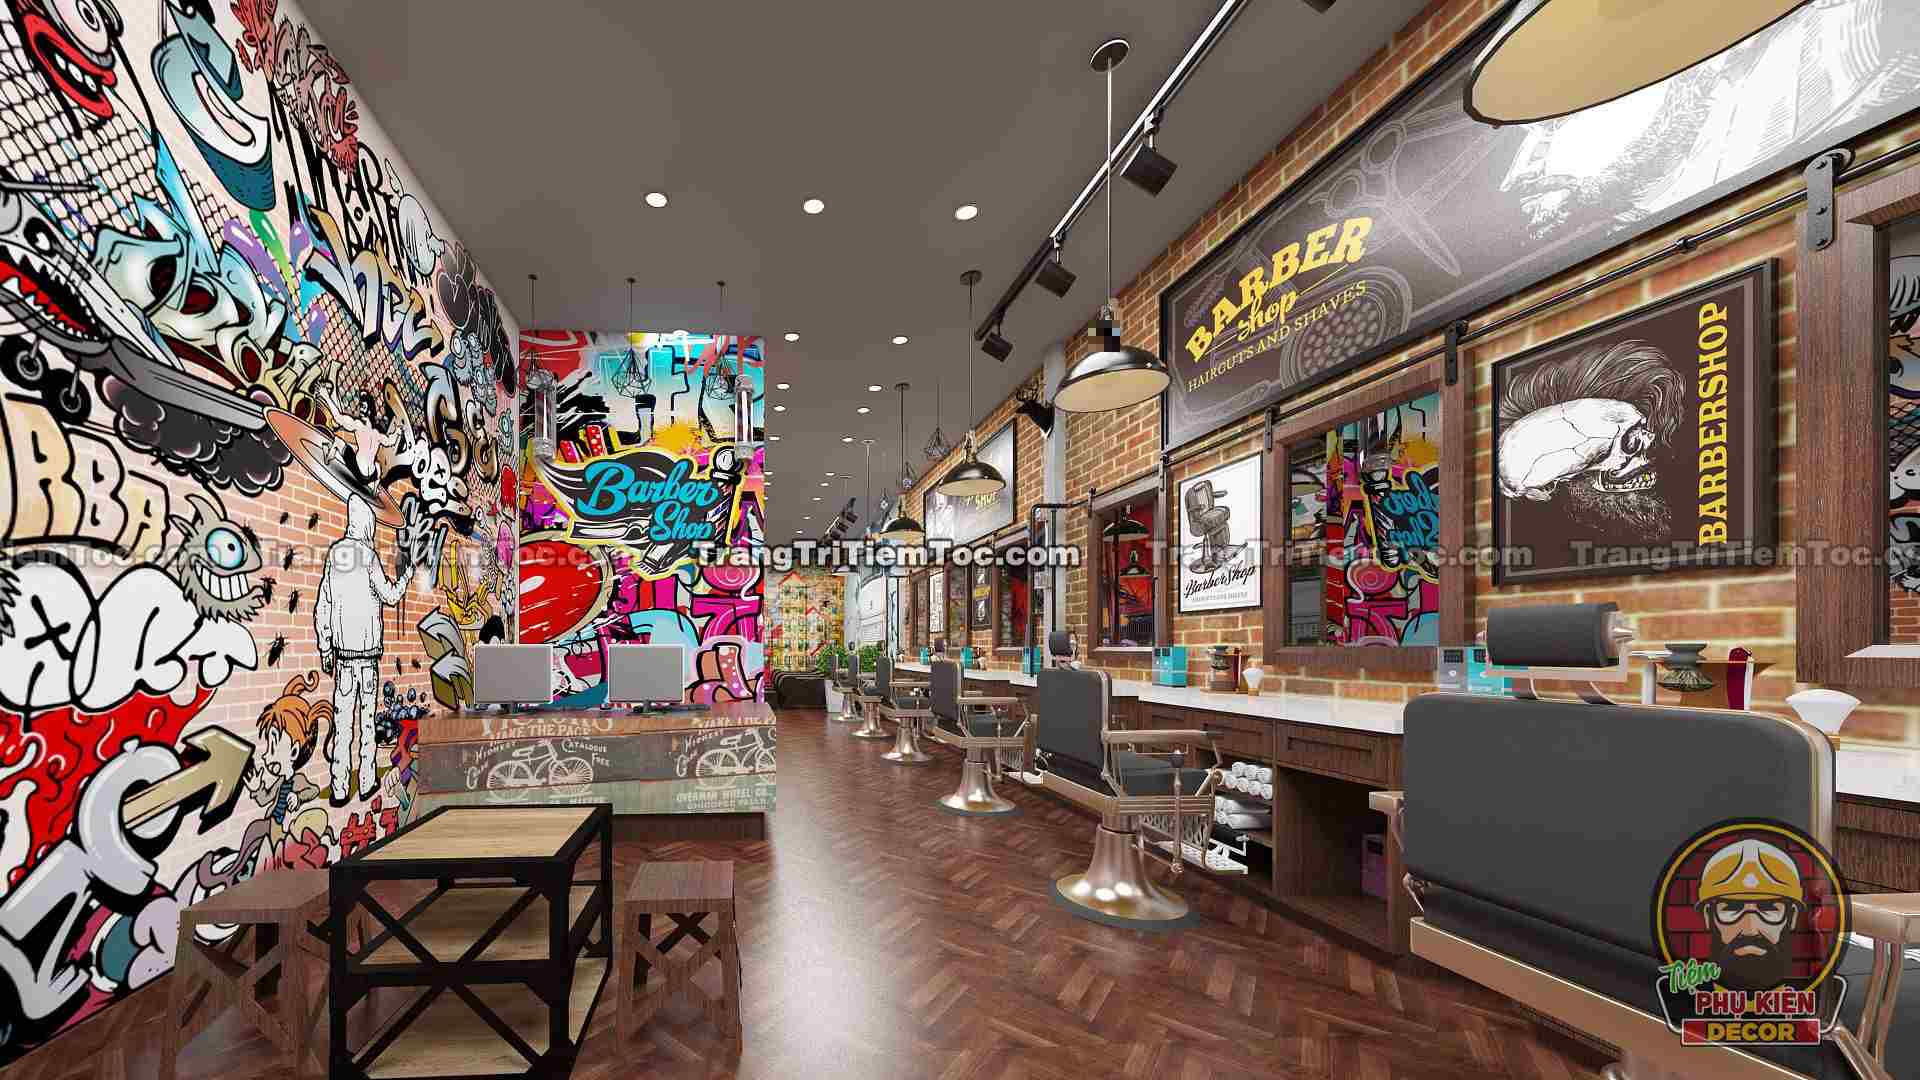 Trang trí Barber Shop, Tiệm tóc nam đẹp bằng tranh dán tường phong cách Graffiti